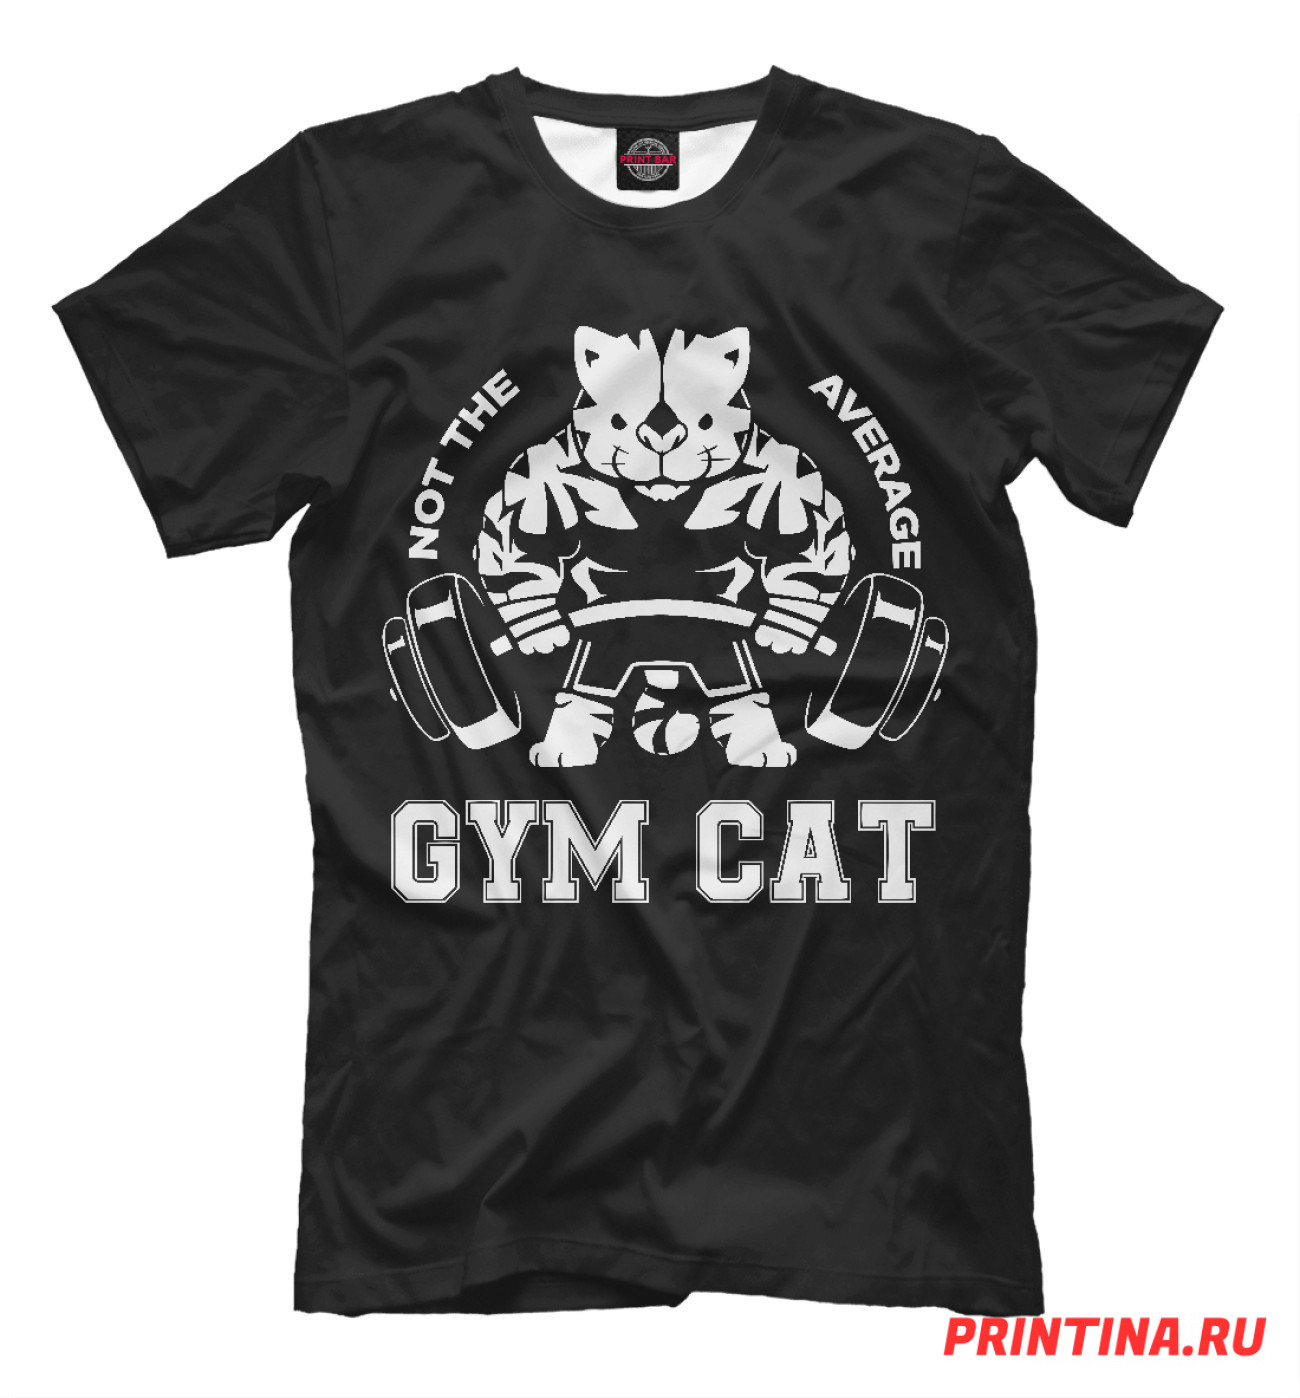 Мужская Футболка Gym Cat, артикул: FIT-324721-fut-2